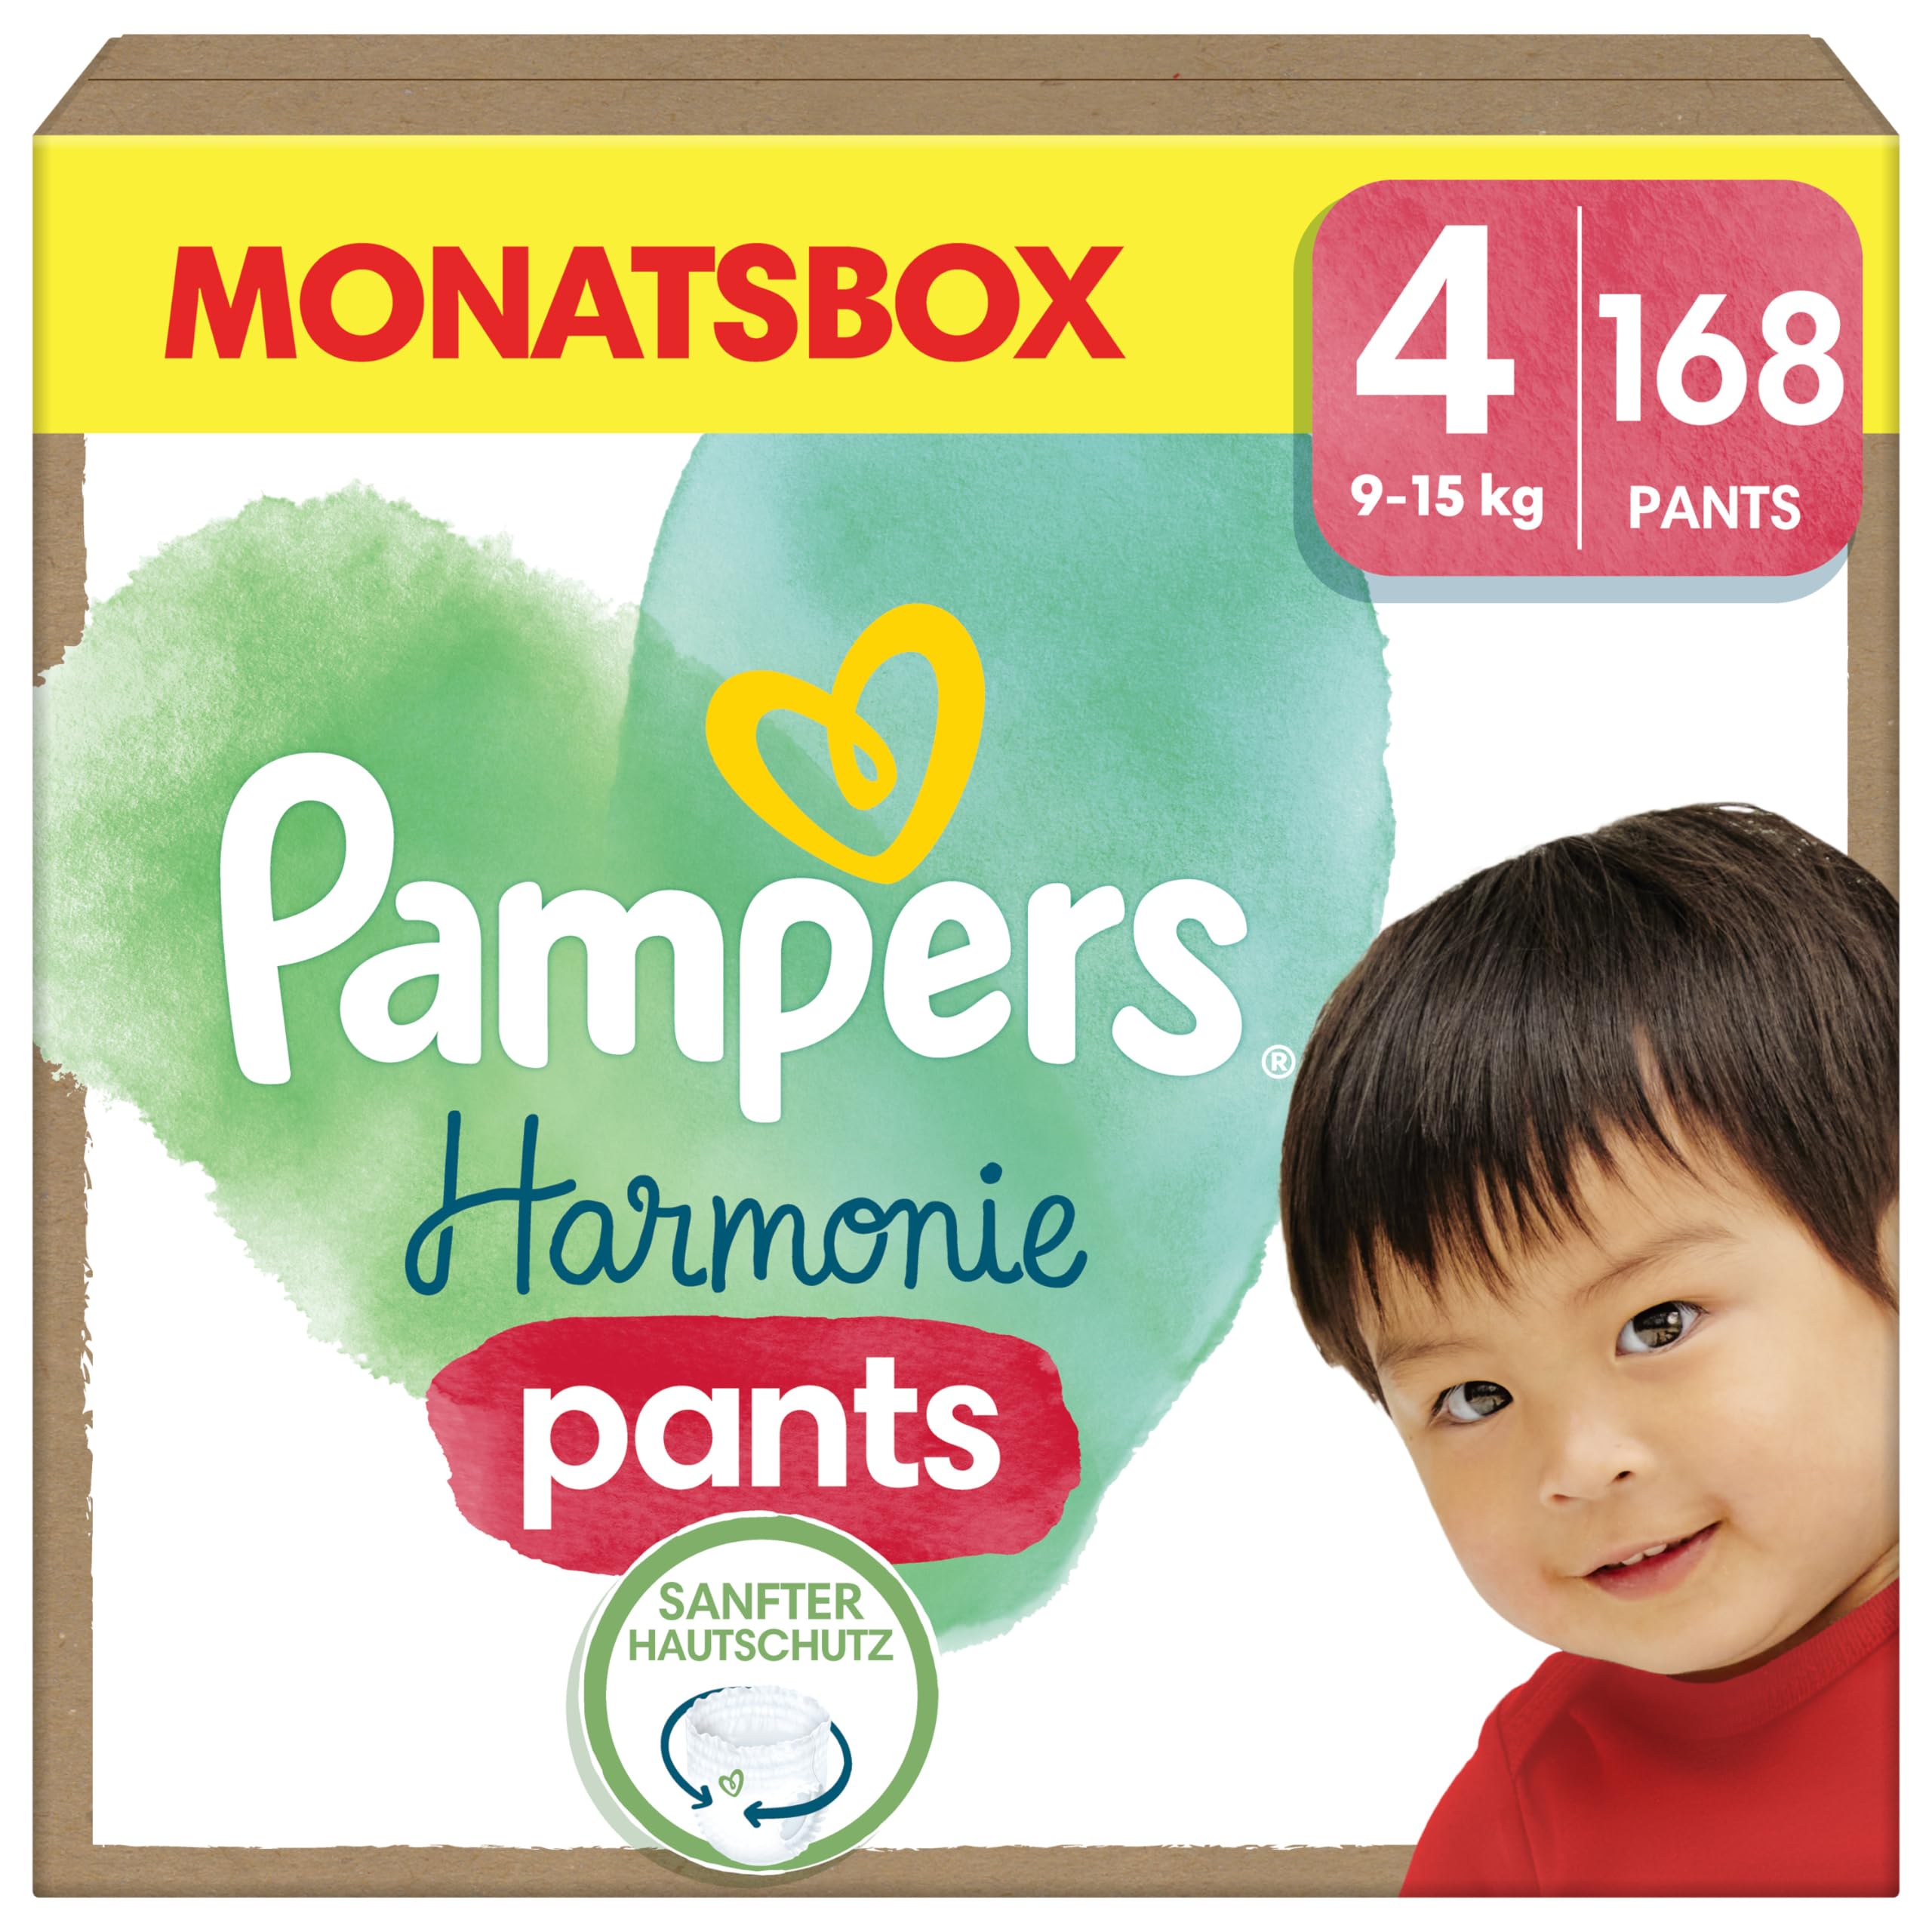 Pampers Harmonie Windeln Pants Baby, Größe 4 (9kg-15kg), Monatsbox, sanfter Hautschutz und pflanzenbasierte Inhaltsstoffe, 168 Höschenwindeln